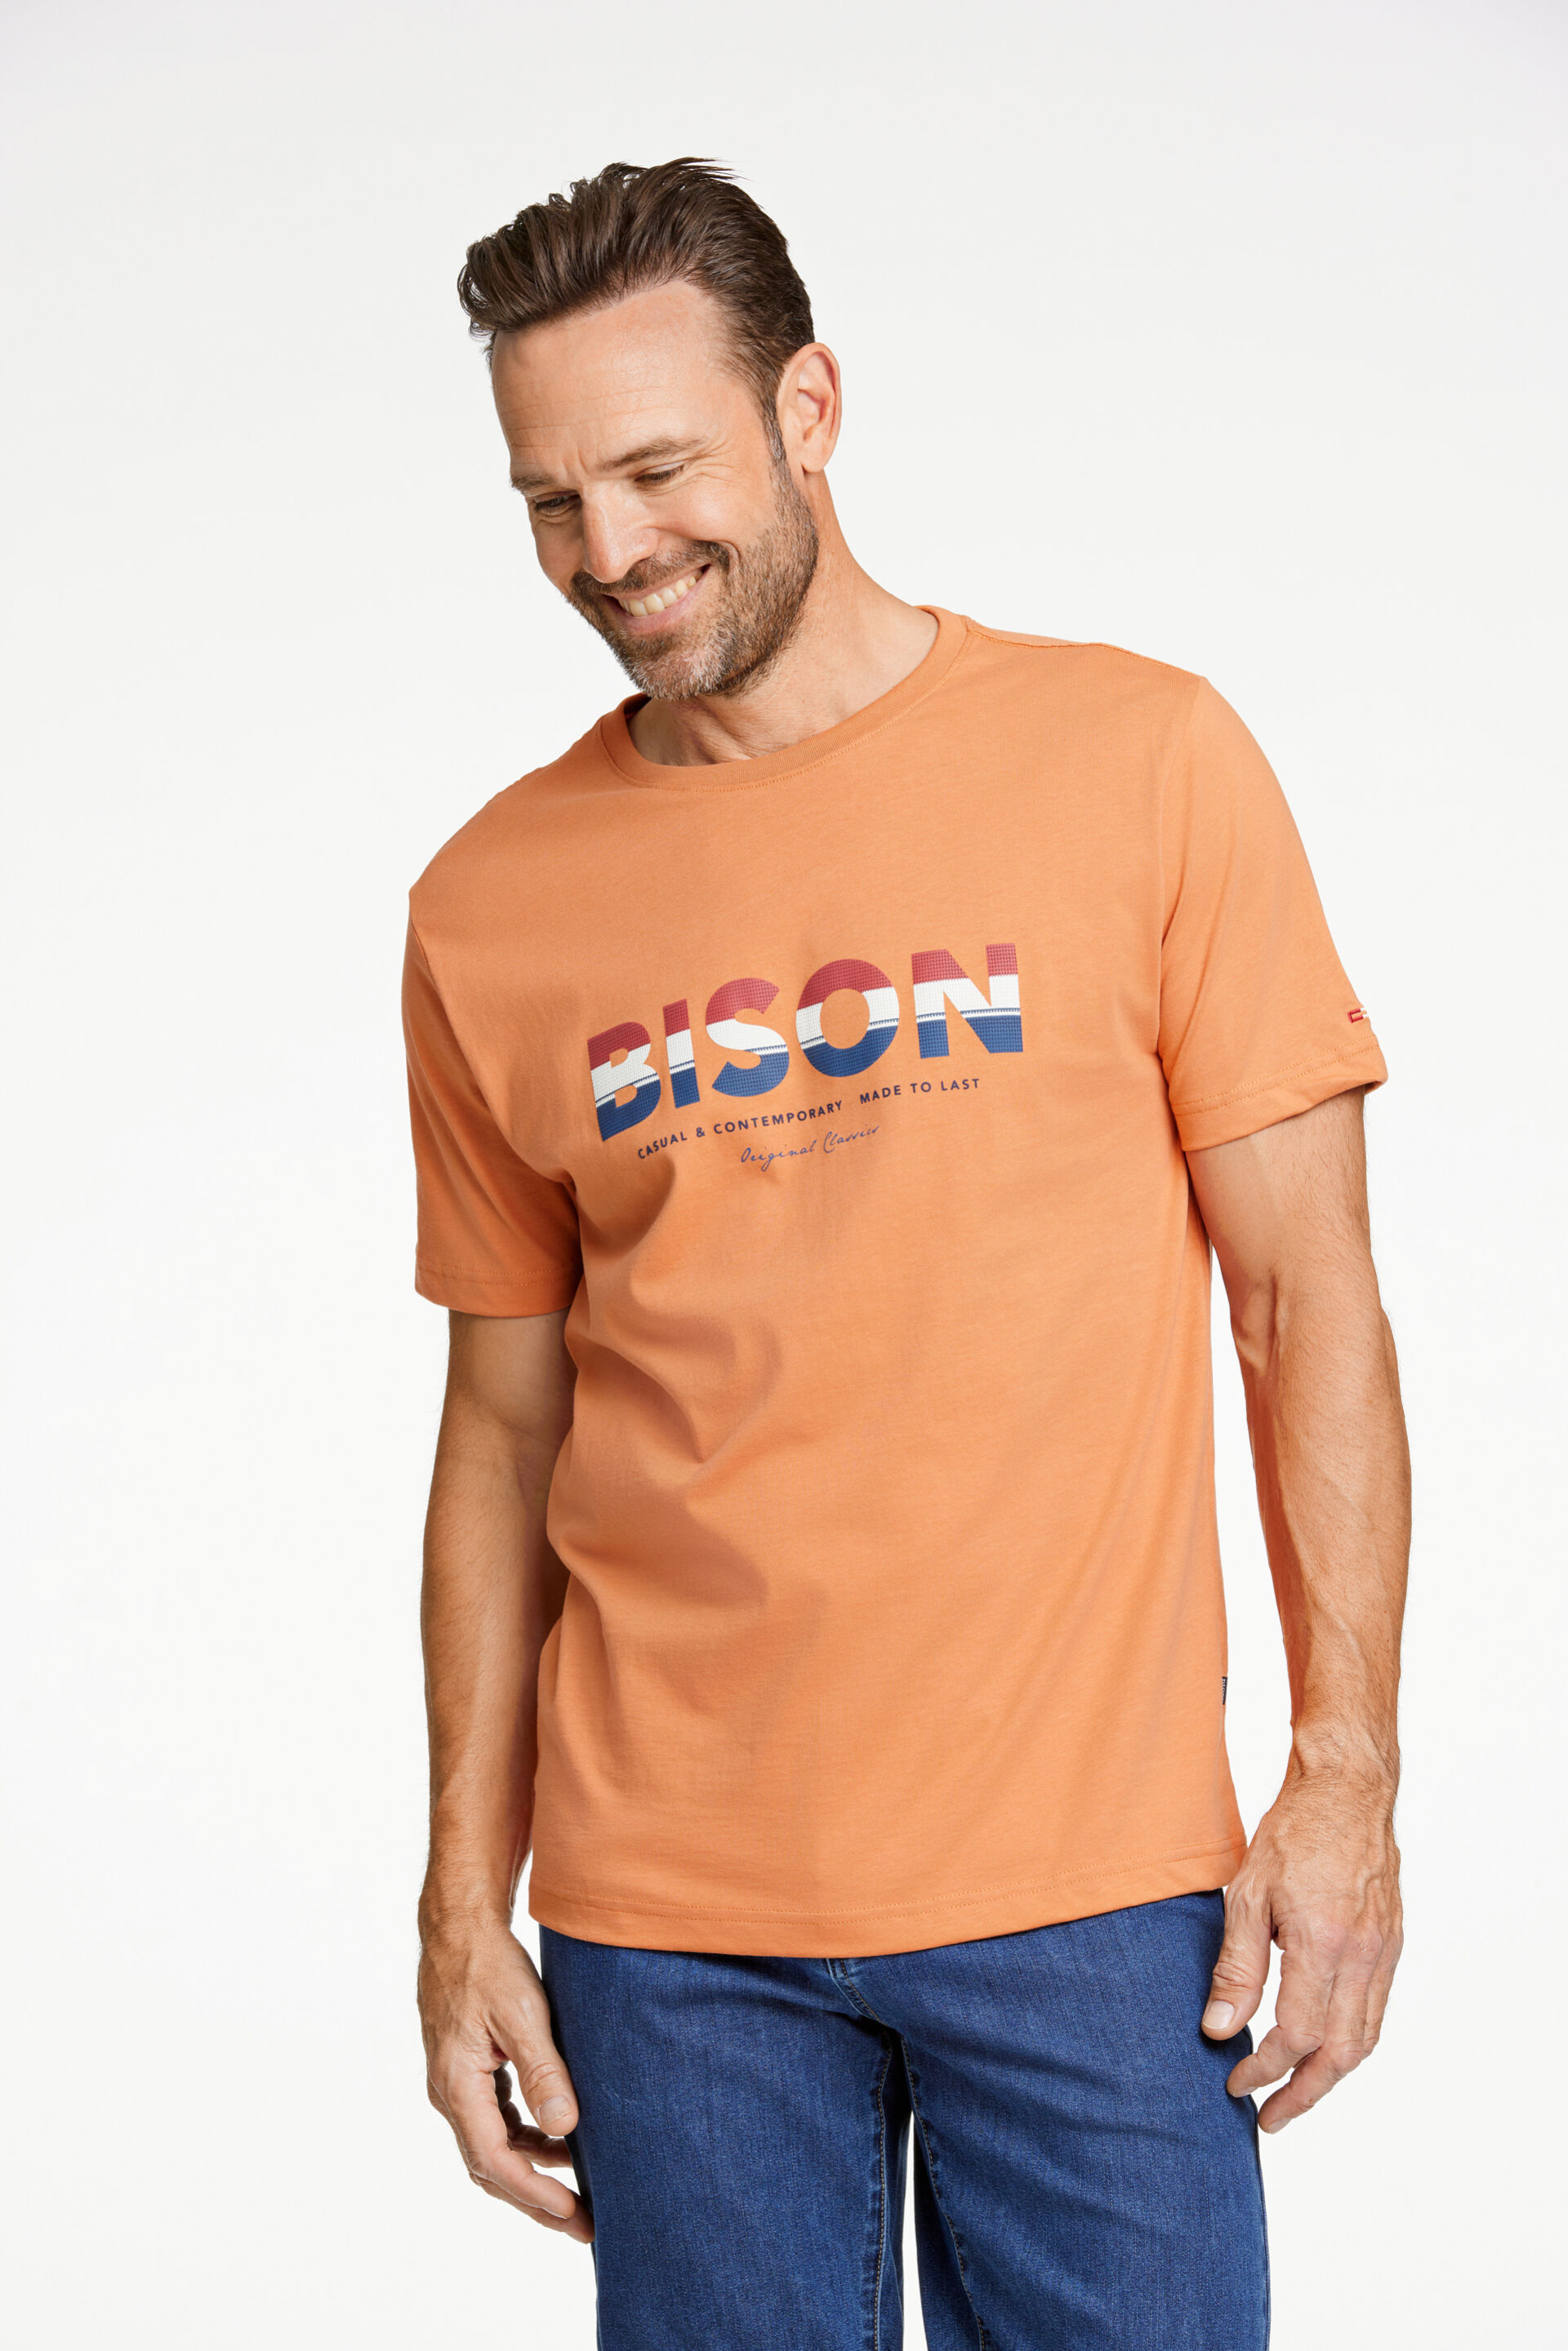 Bison  T-shirt Orange 80-400113